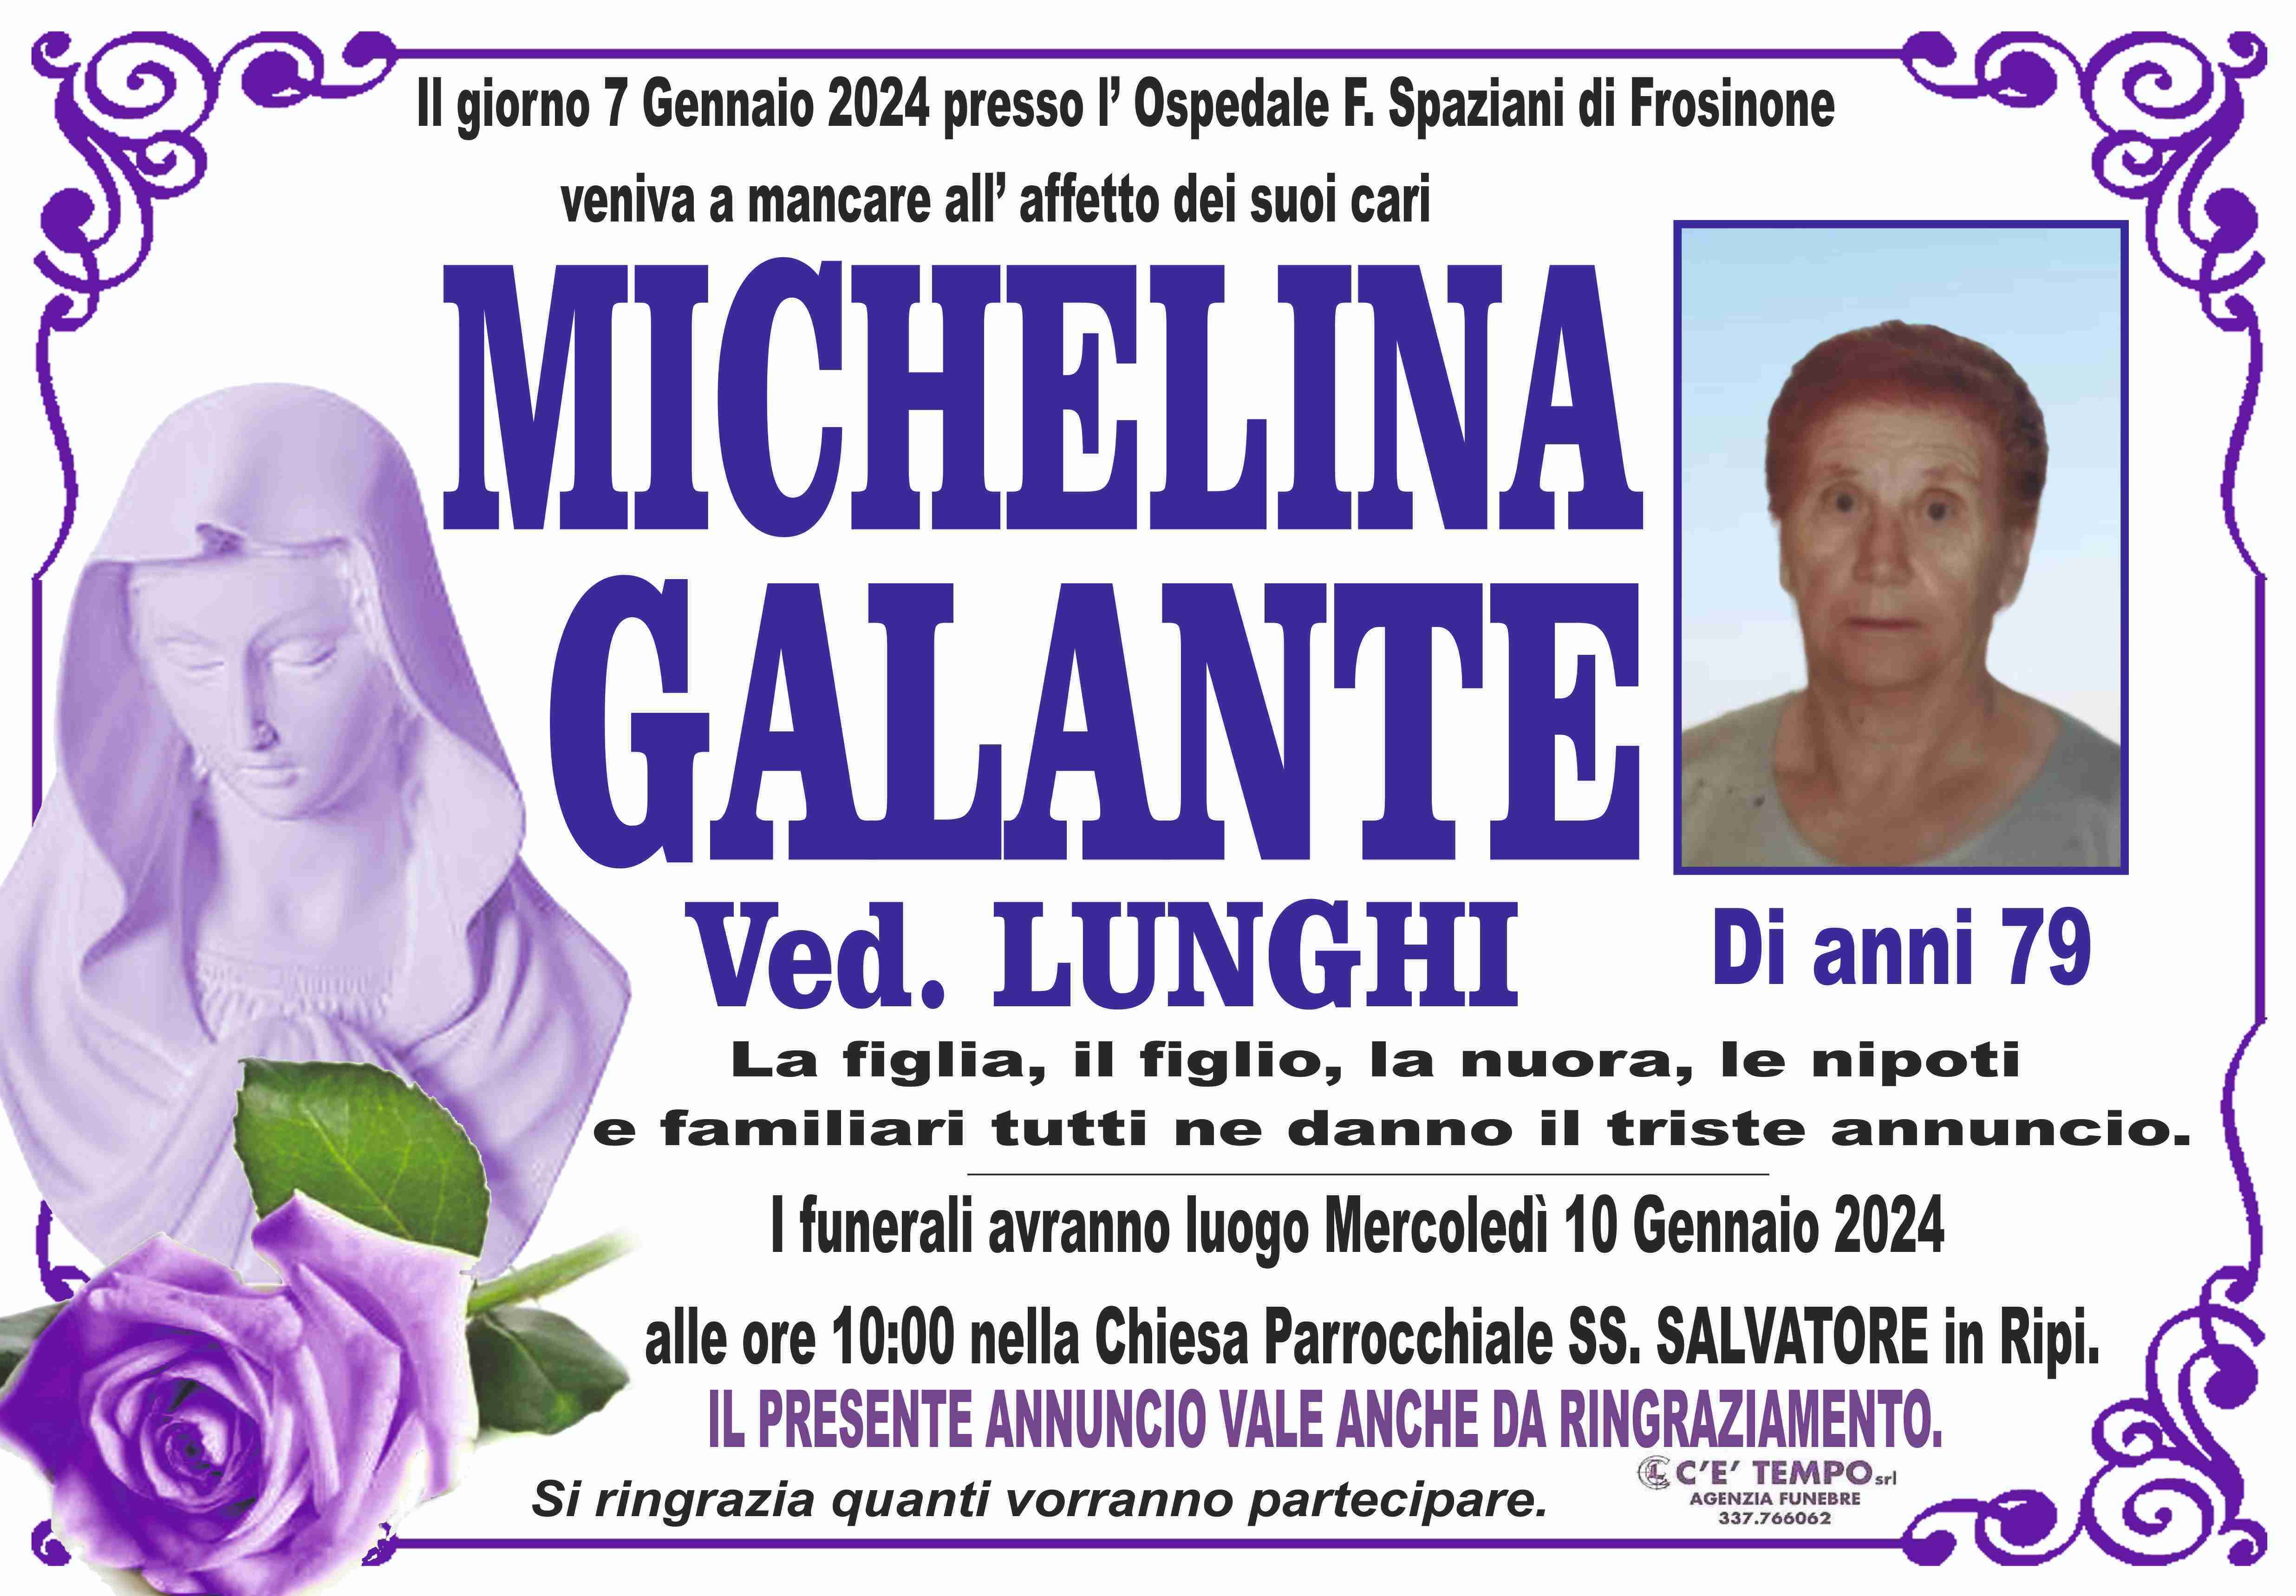 Michelina Galante